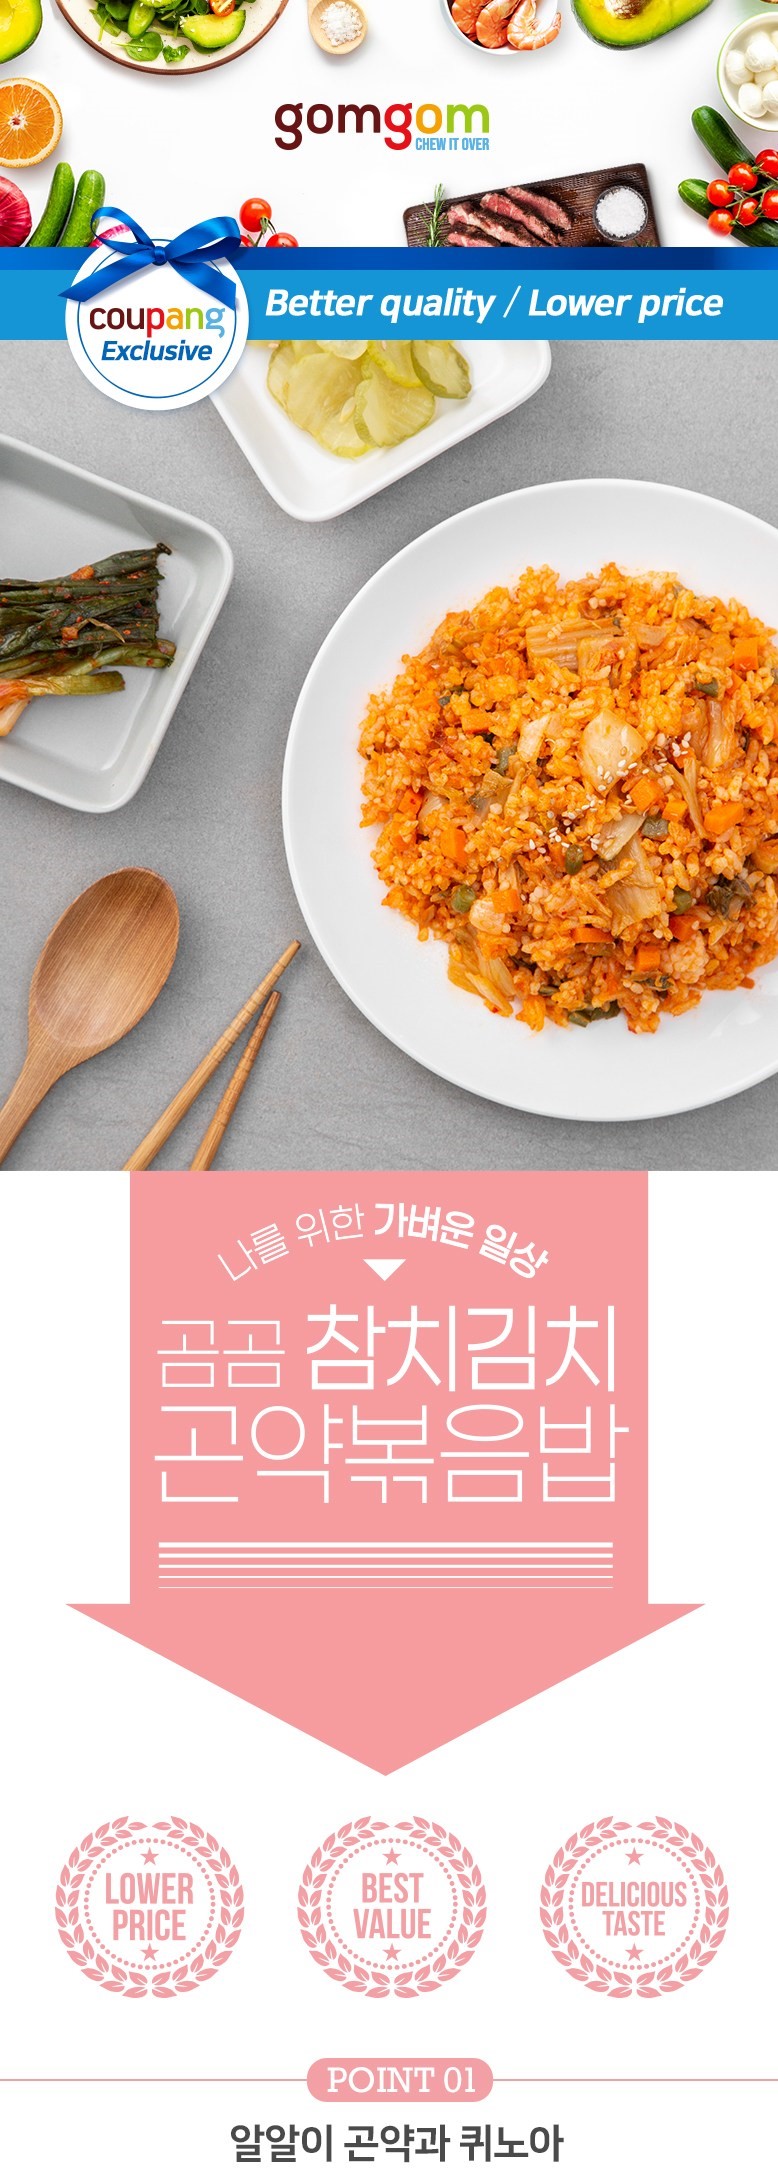 韓國食品-[곰곰] 곤약 볶음밥 (참치김치) 200g